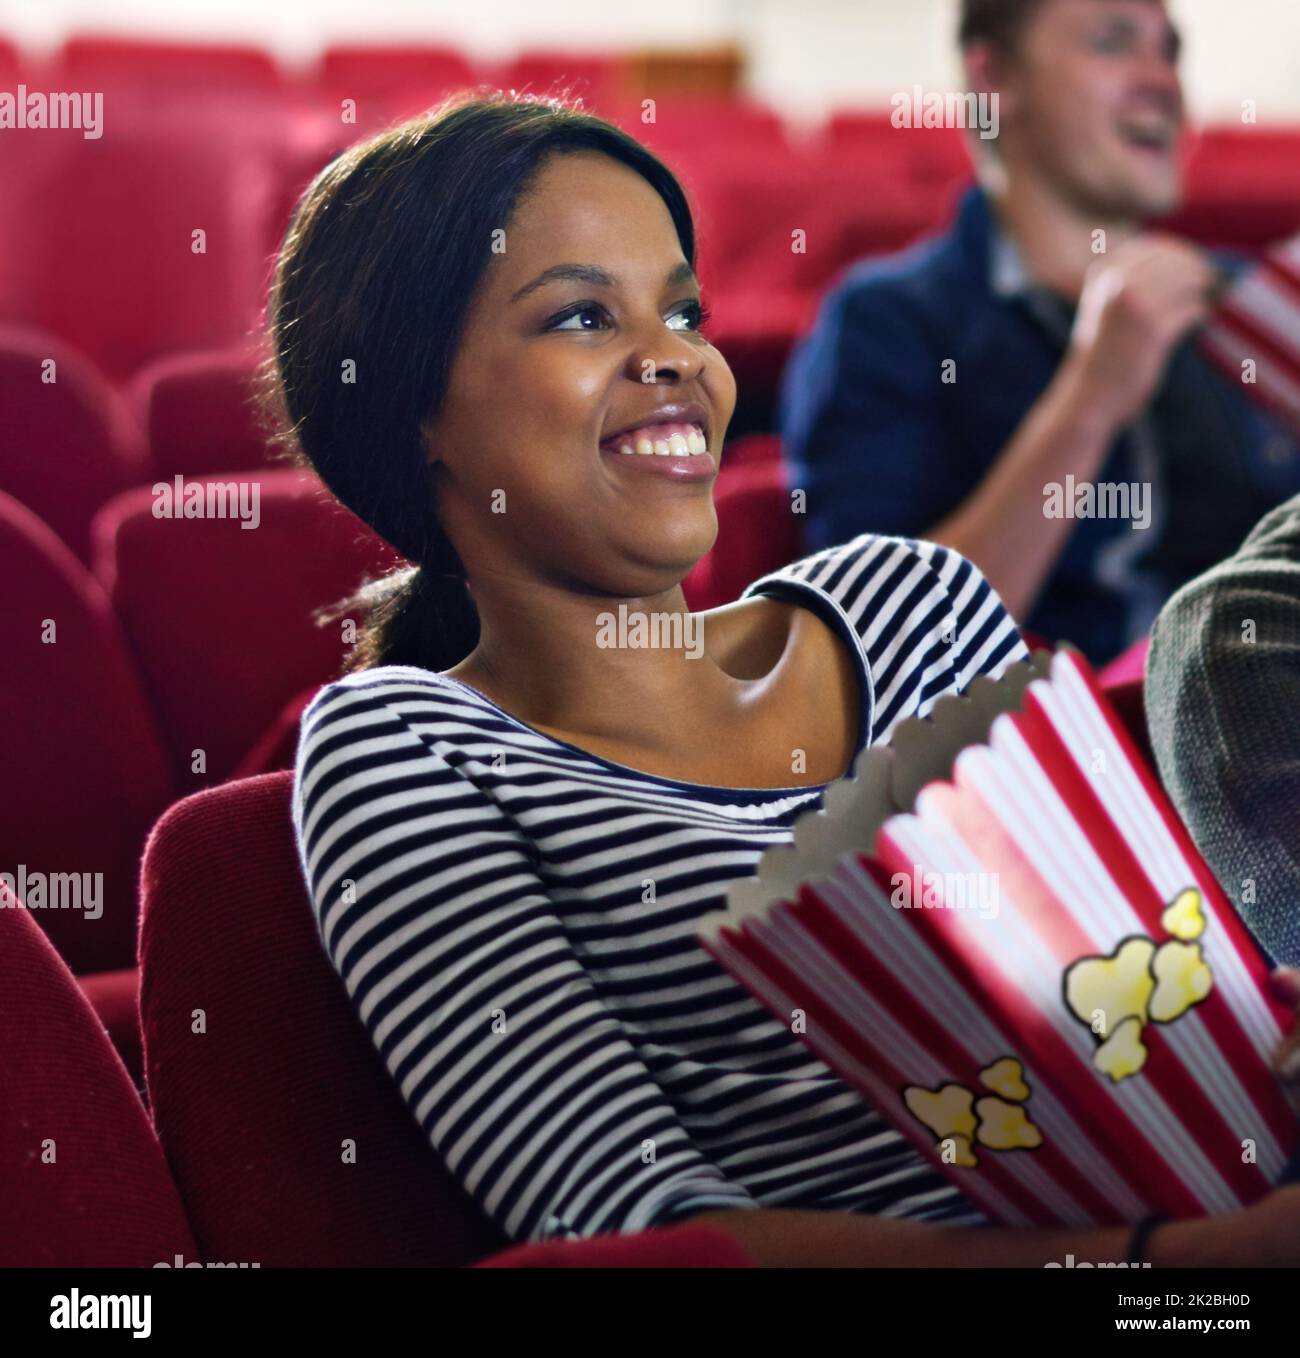 Nichts wie eine rom-com, um meine Stimmung aufzuhellen. Aufnahme einer lachenden Frau, während sie einen Film im Kino ansah. Stockfoto